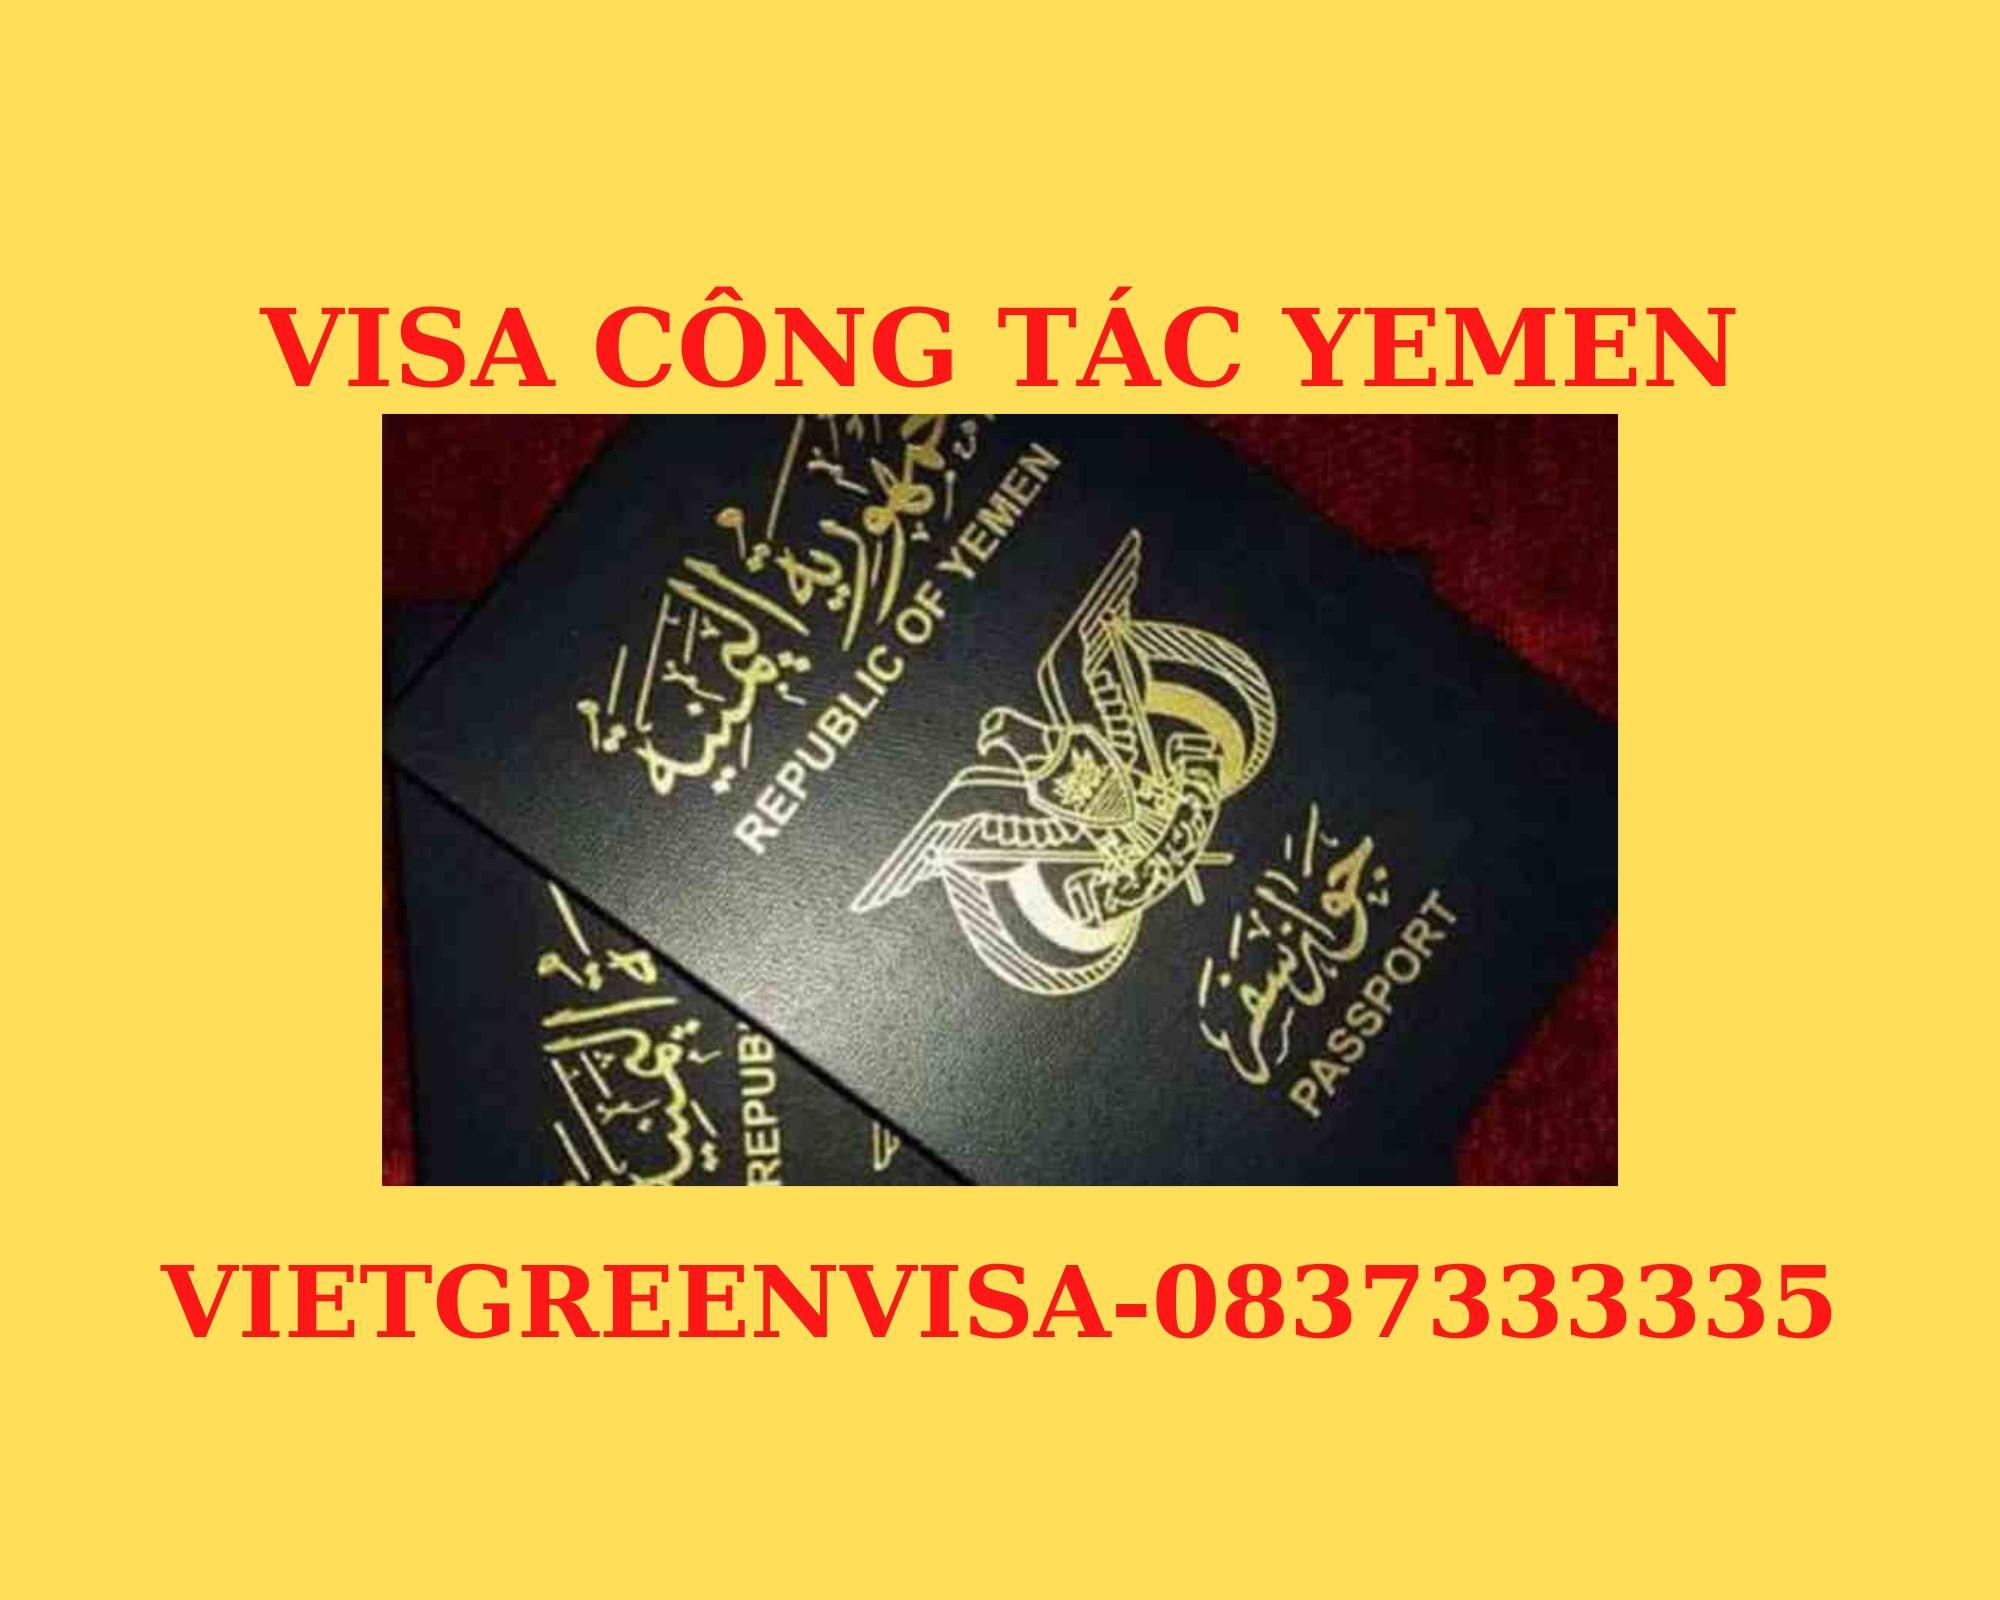 Dịch vụ visa Yemen công tác dự hội chợ nhanh